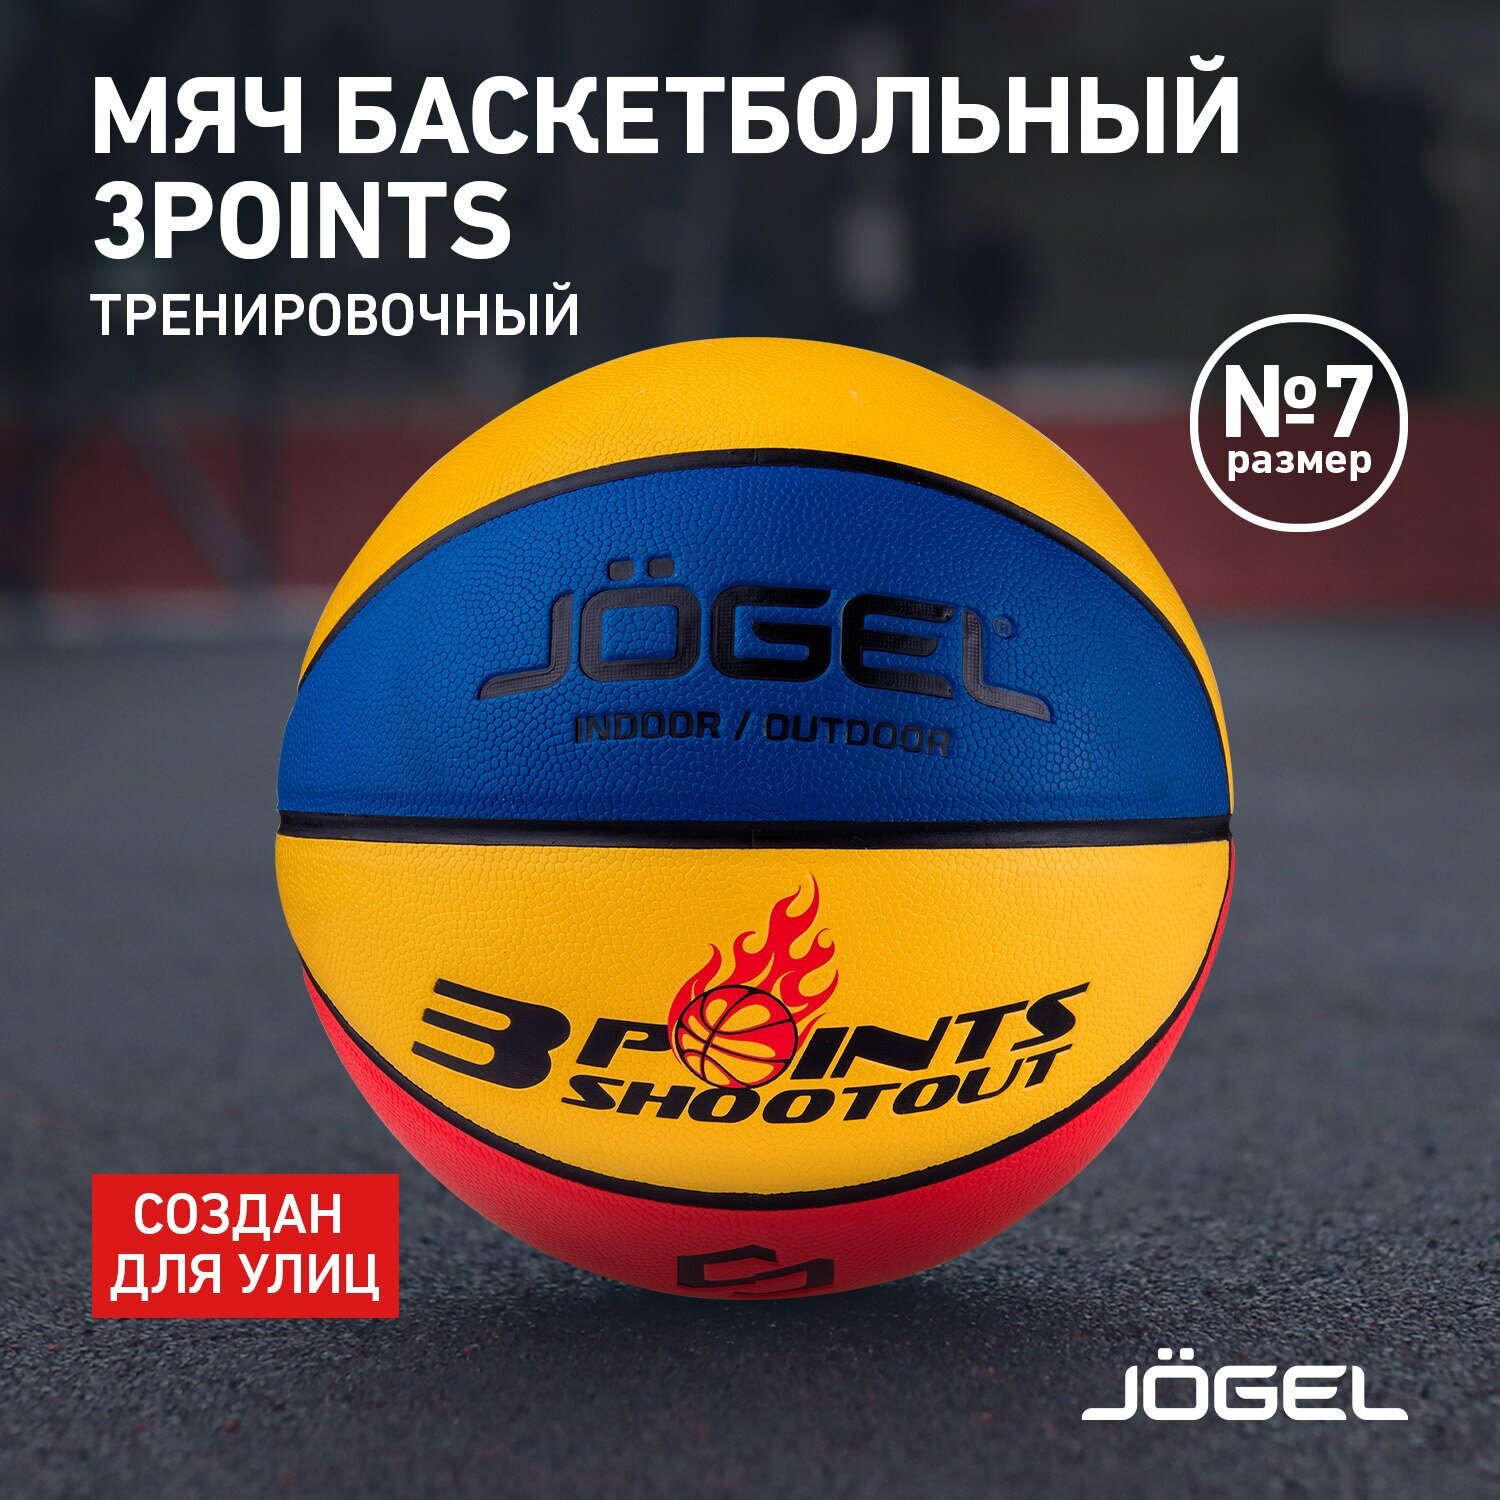 Баскетбольный мяч Jogel 3POINTS для уличного баскетбола, размер 7